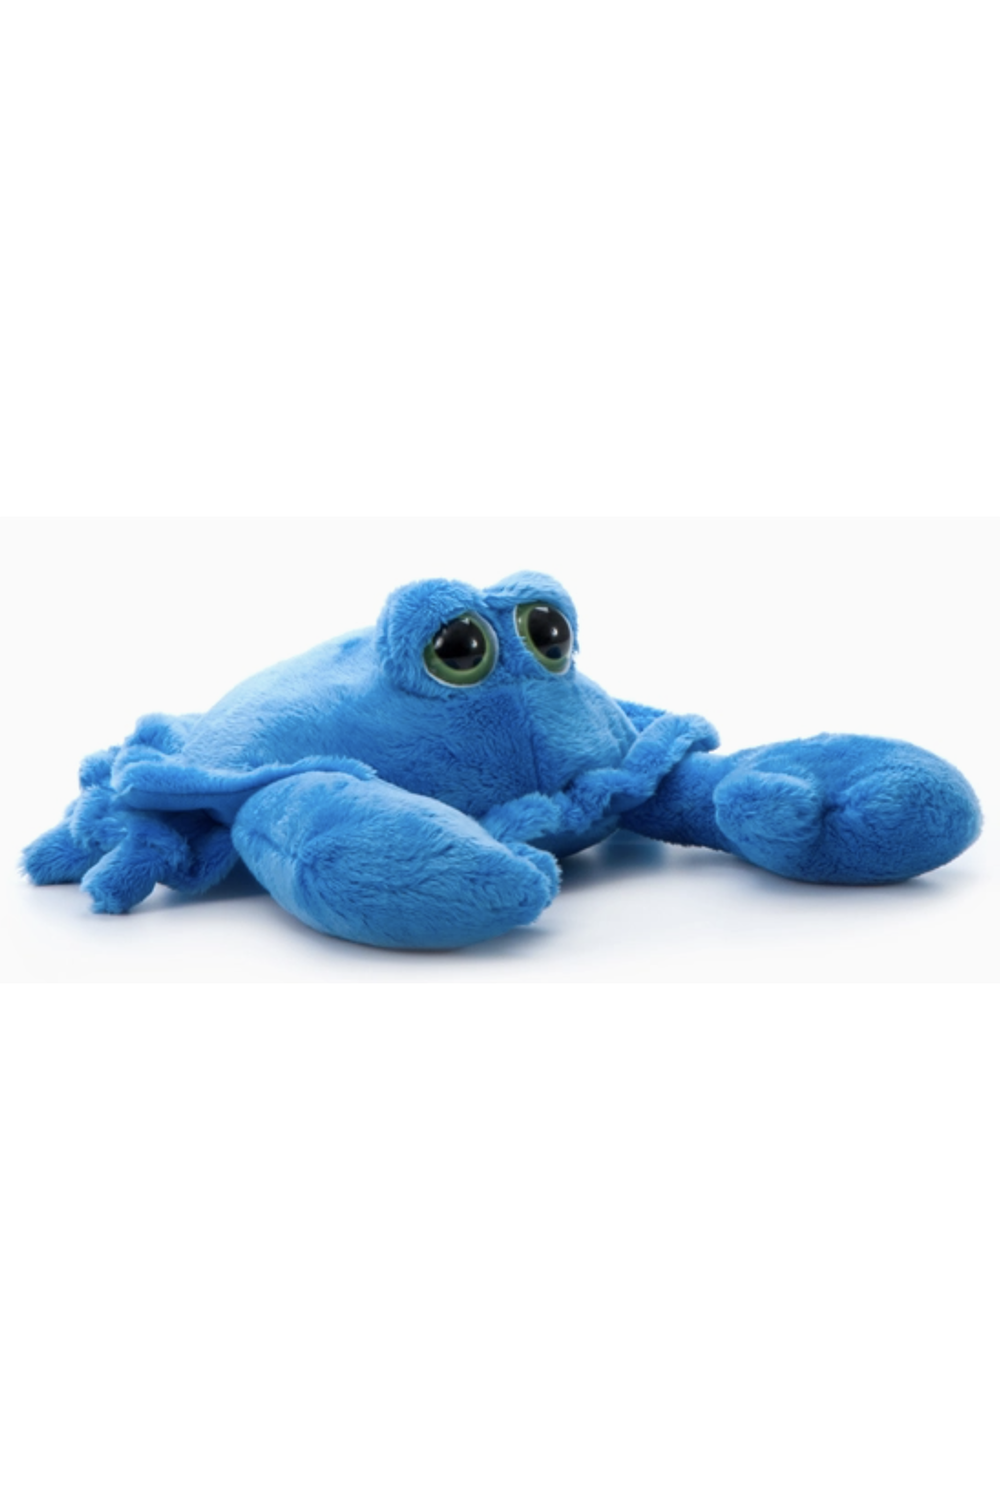 Bright Eye Blue Crab Stuffed Animal